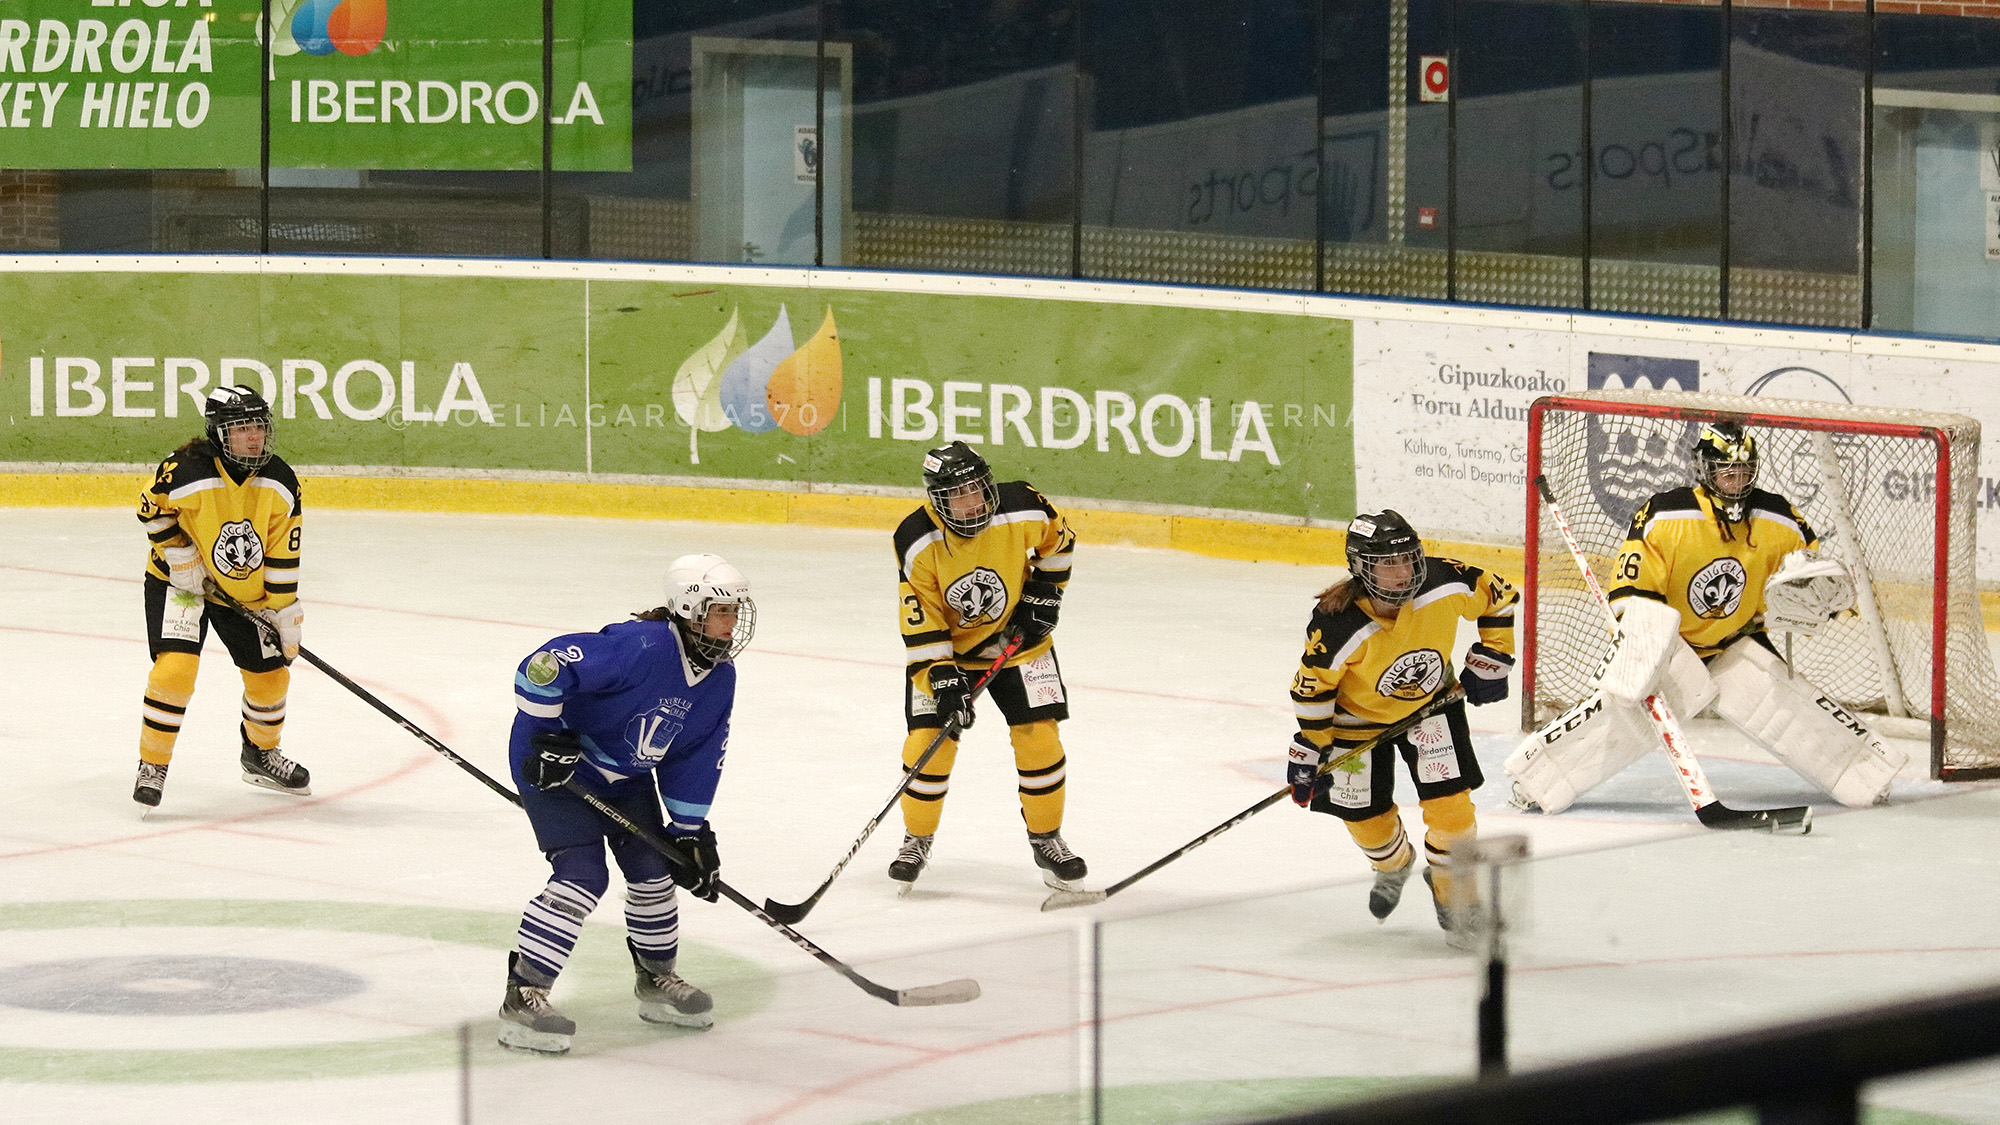 hockey hielo, Emocionante jornada de recuperación en las ligas de hockey hielo, Real Federación Española Deportes de Hielo